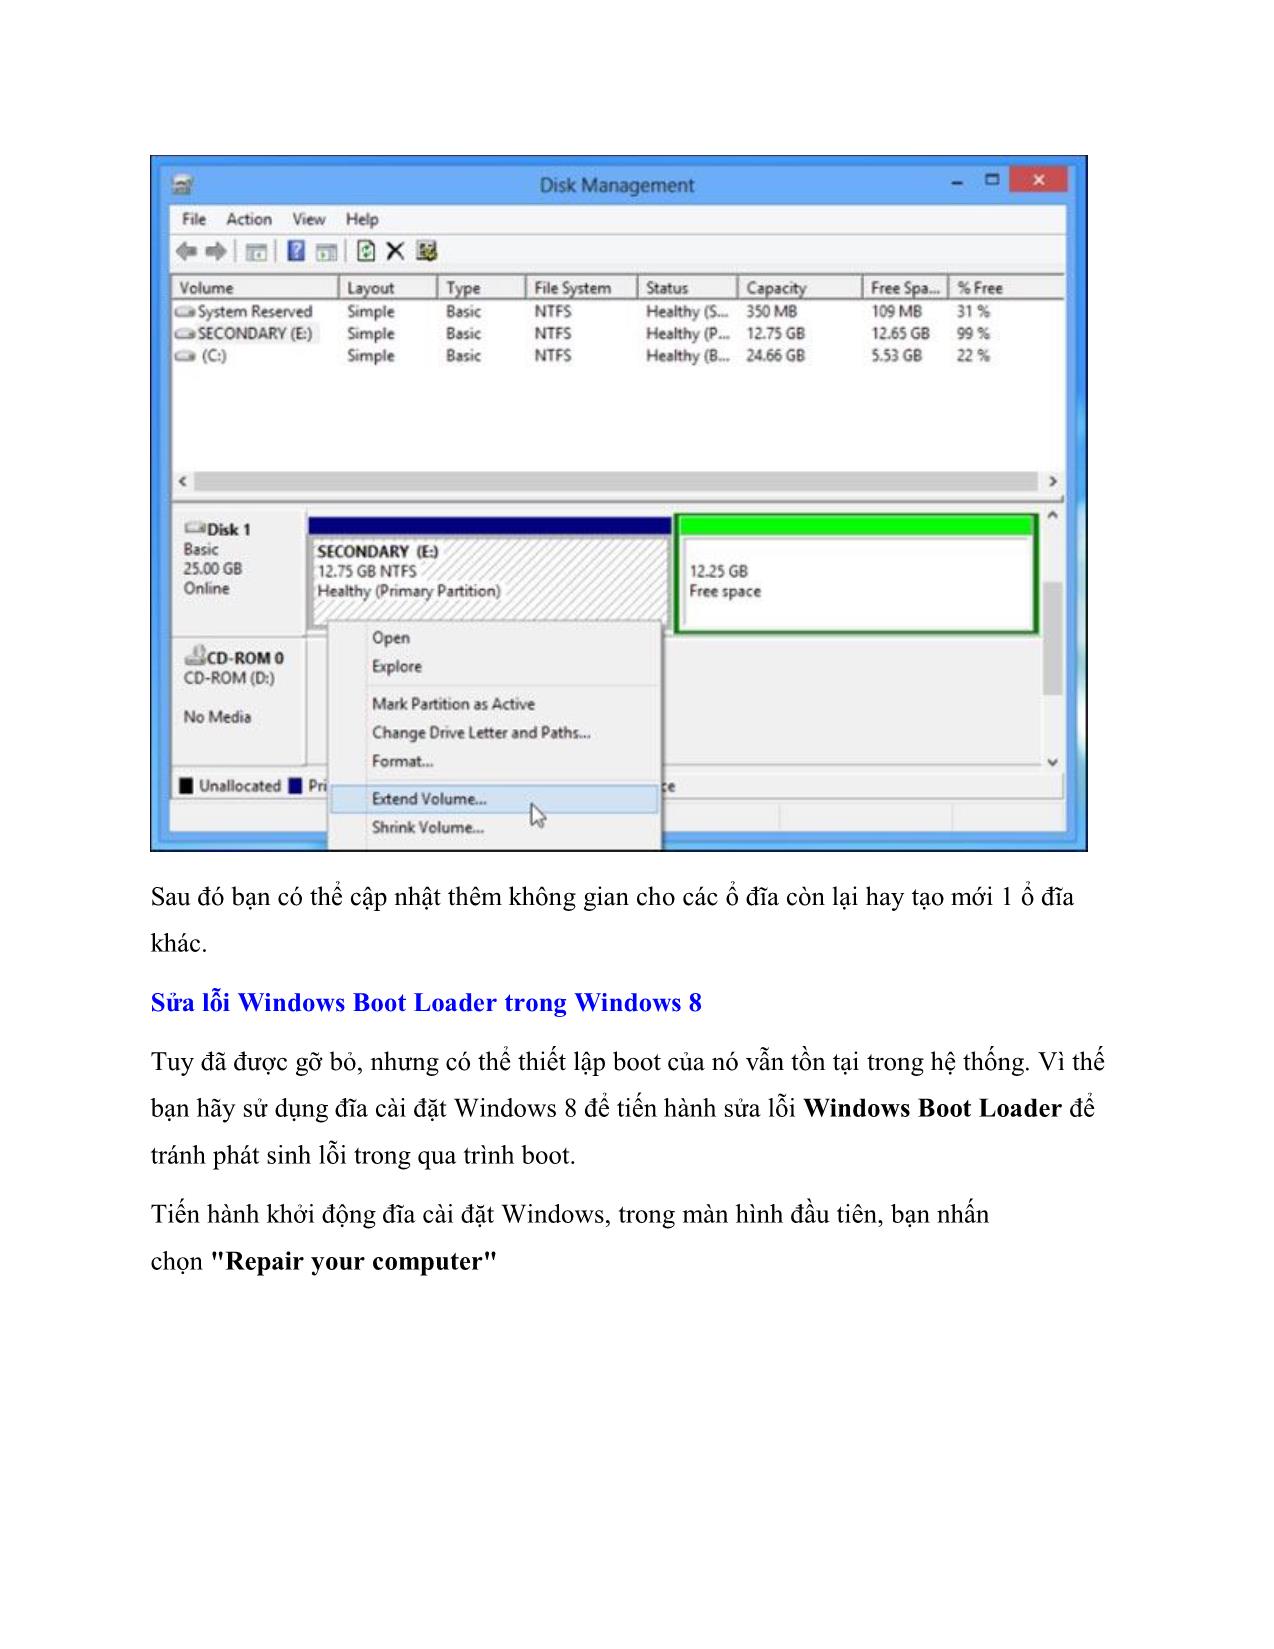 Những cách gỡ bỏ hệ điều hành nhân Linux được cài song song Windows 8 trang 5